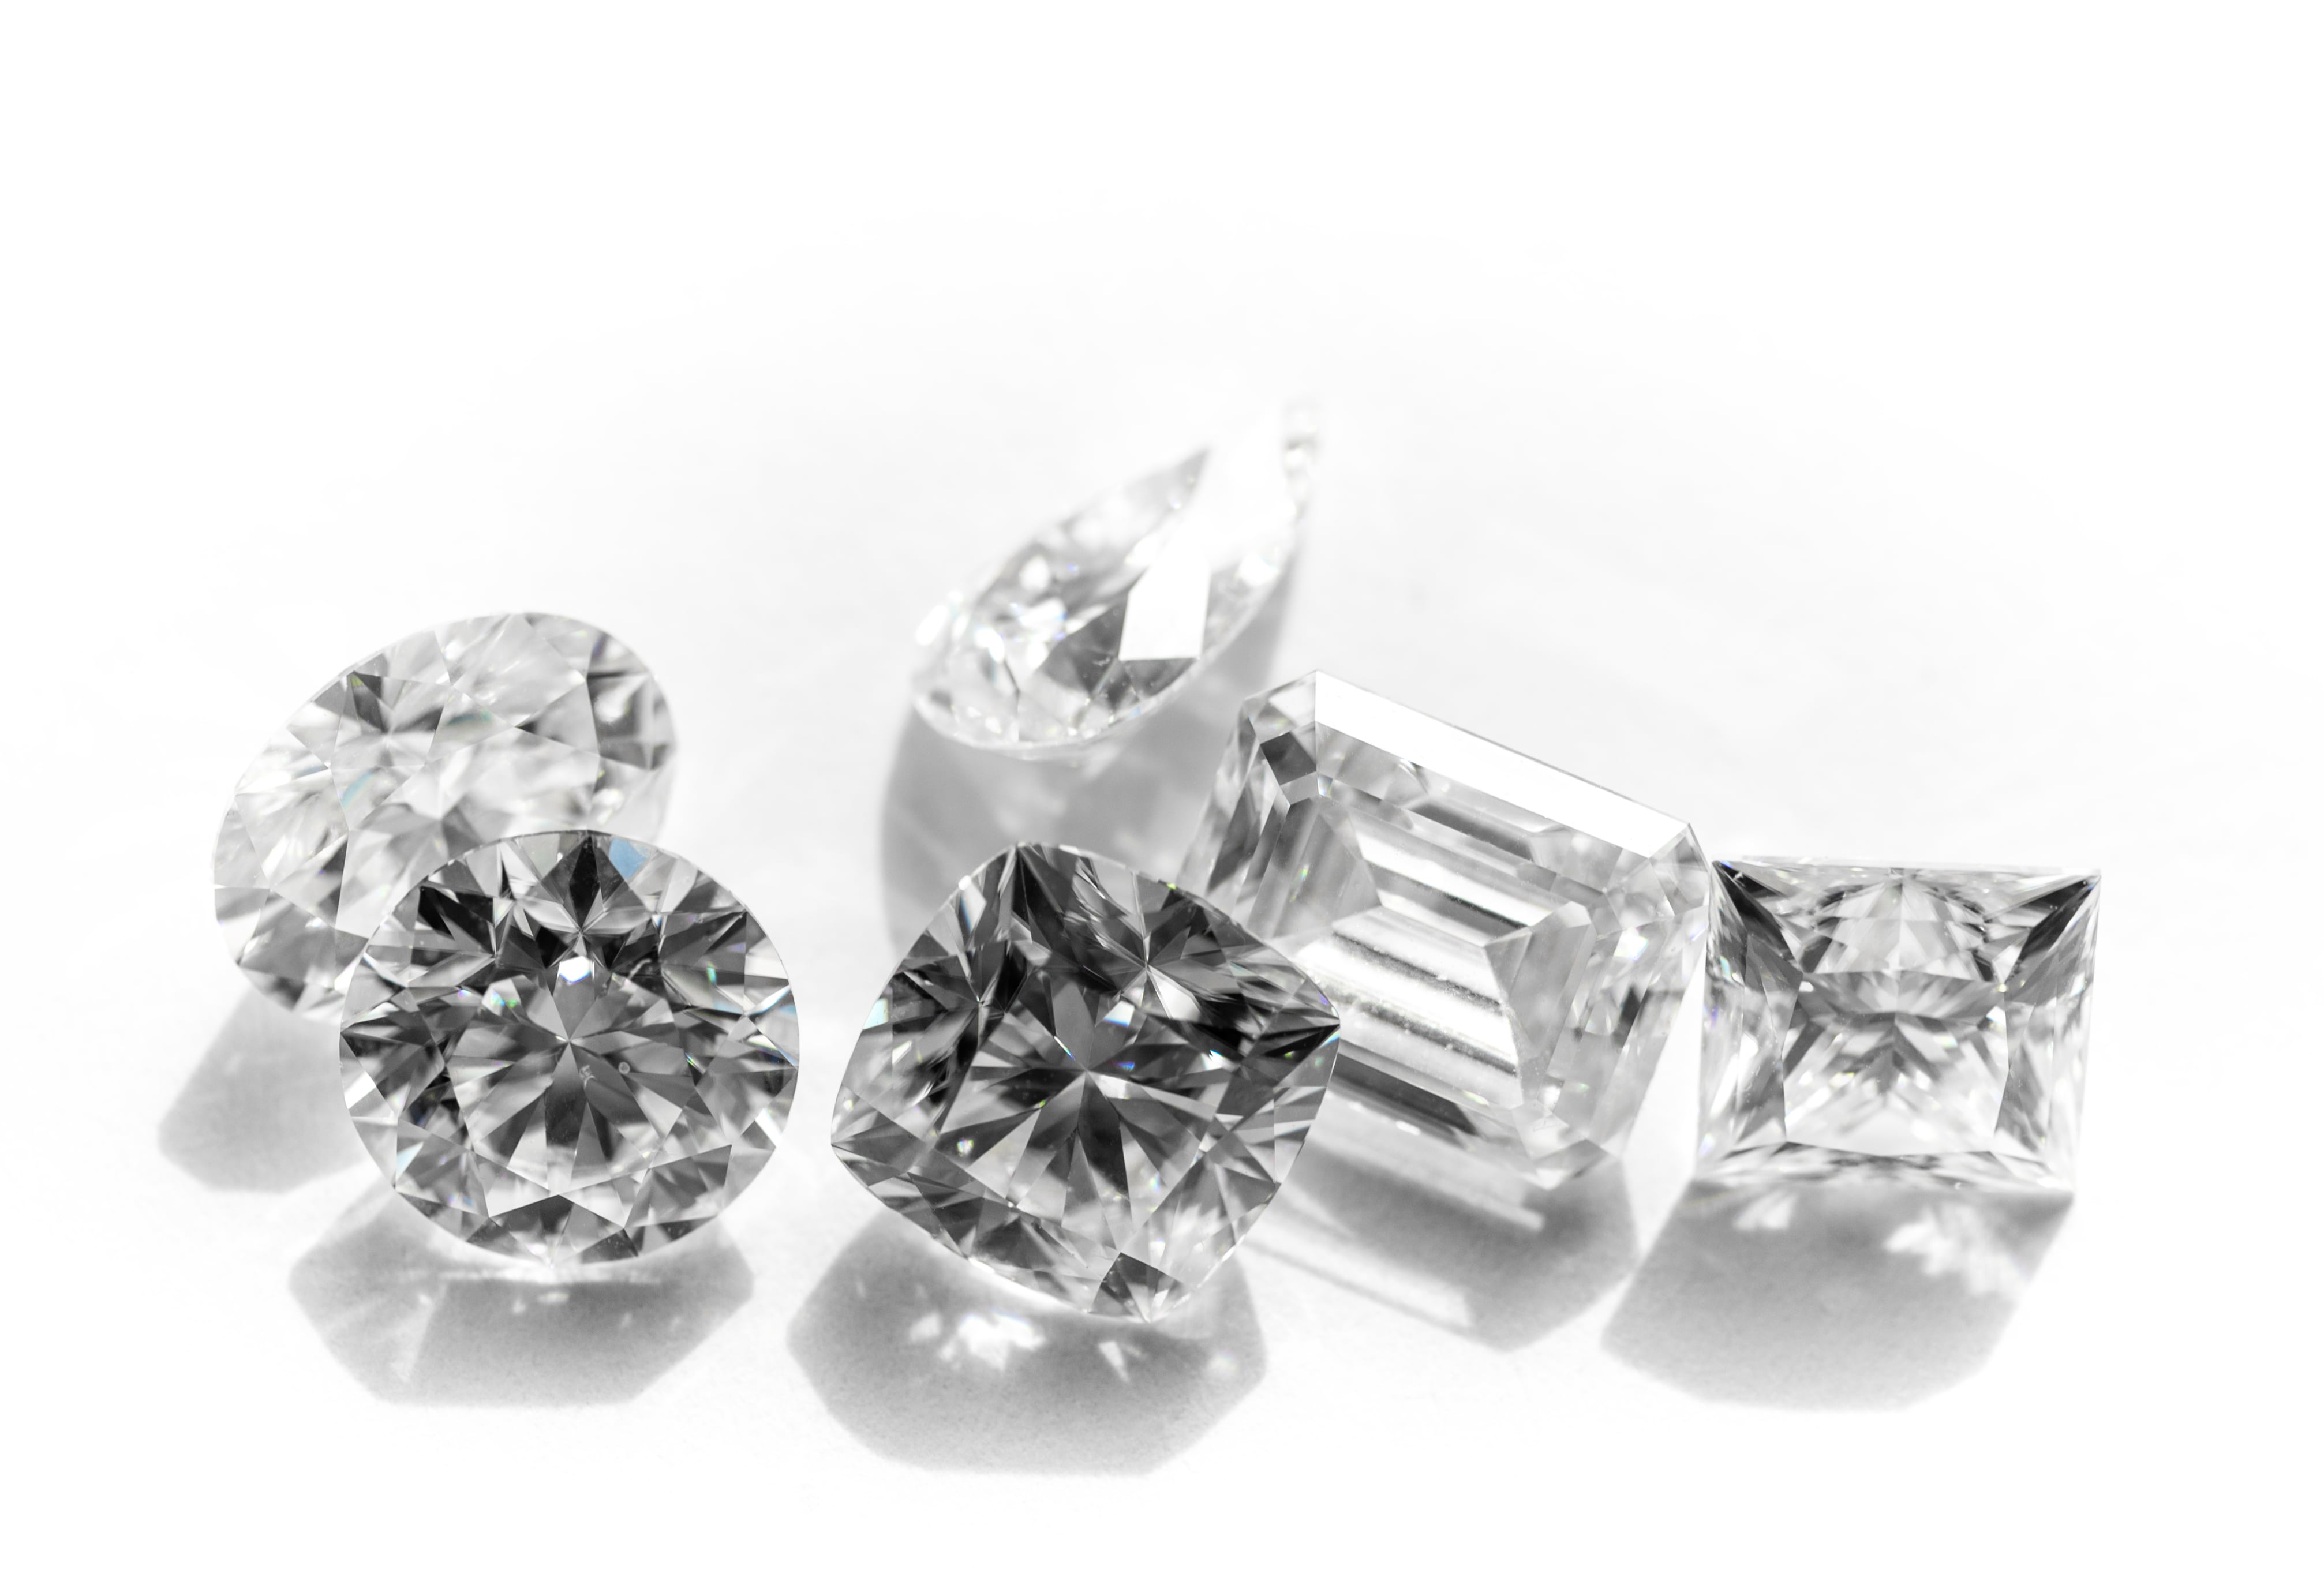 Lab-Grown Diamond Prices